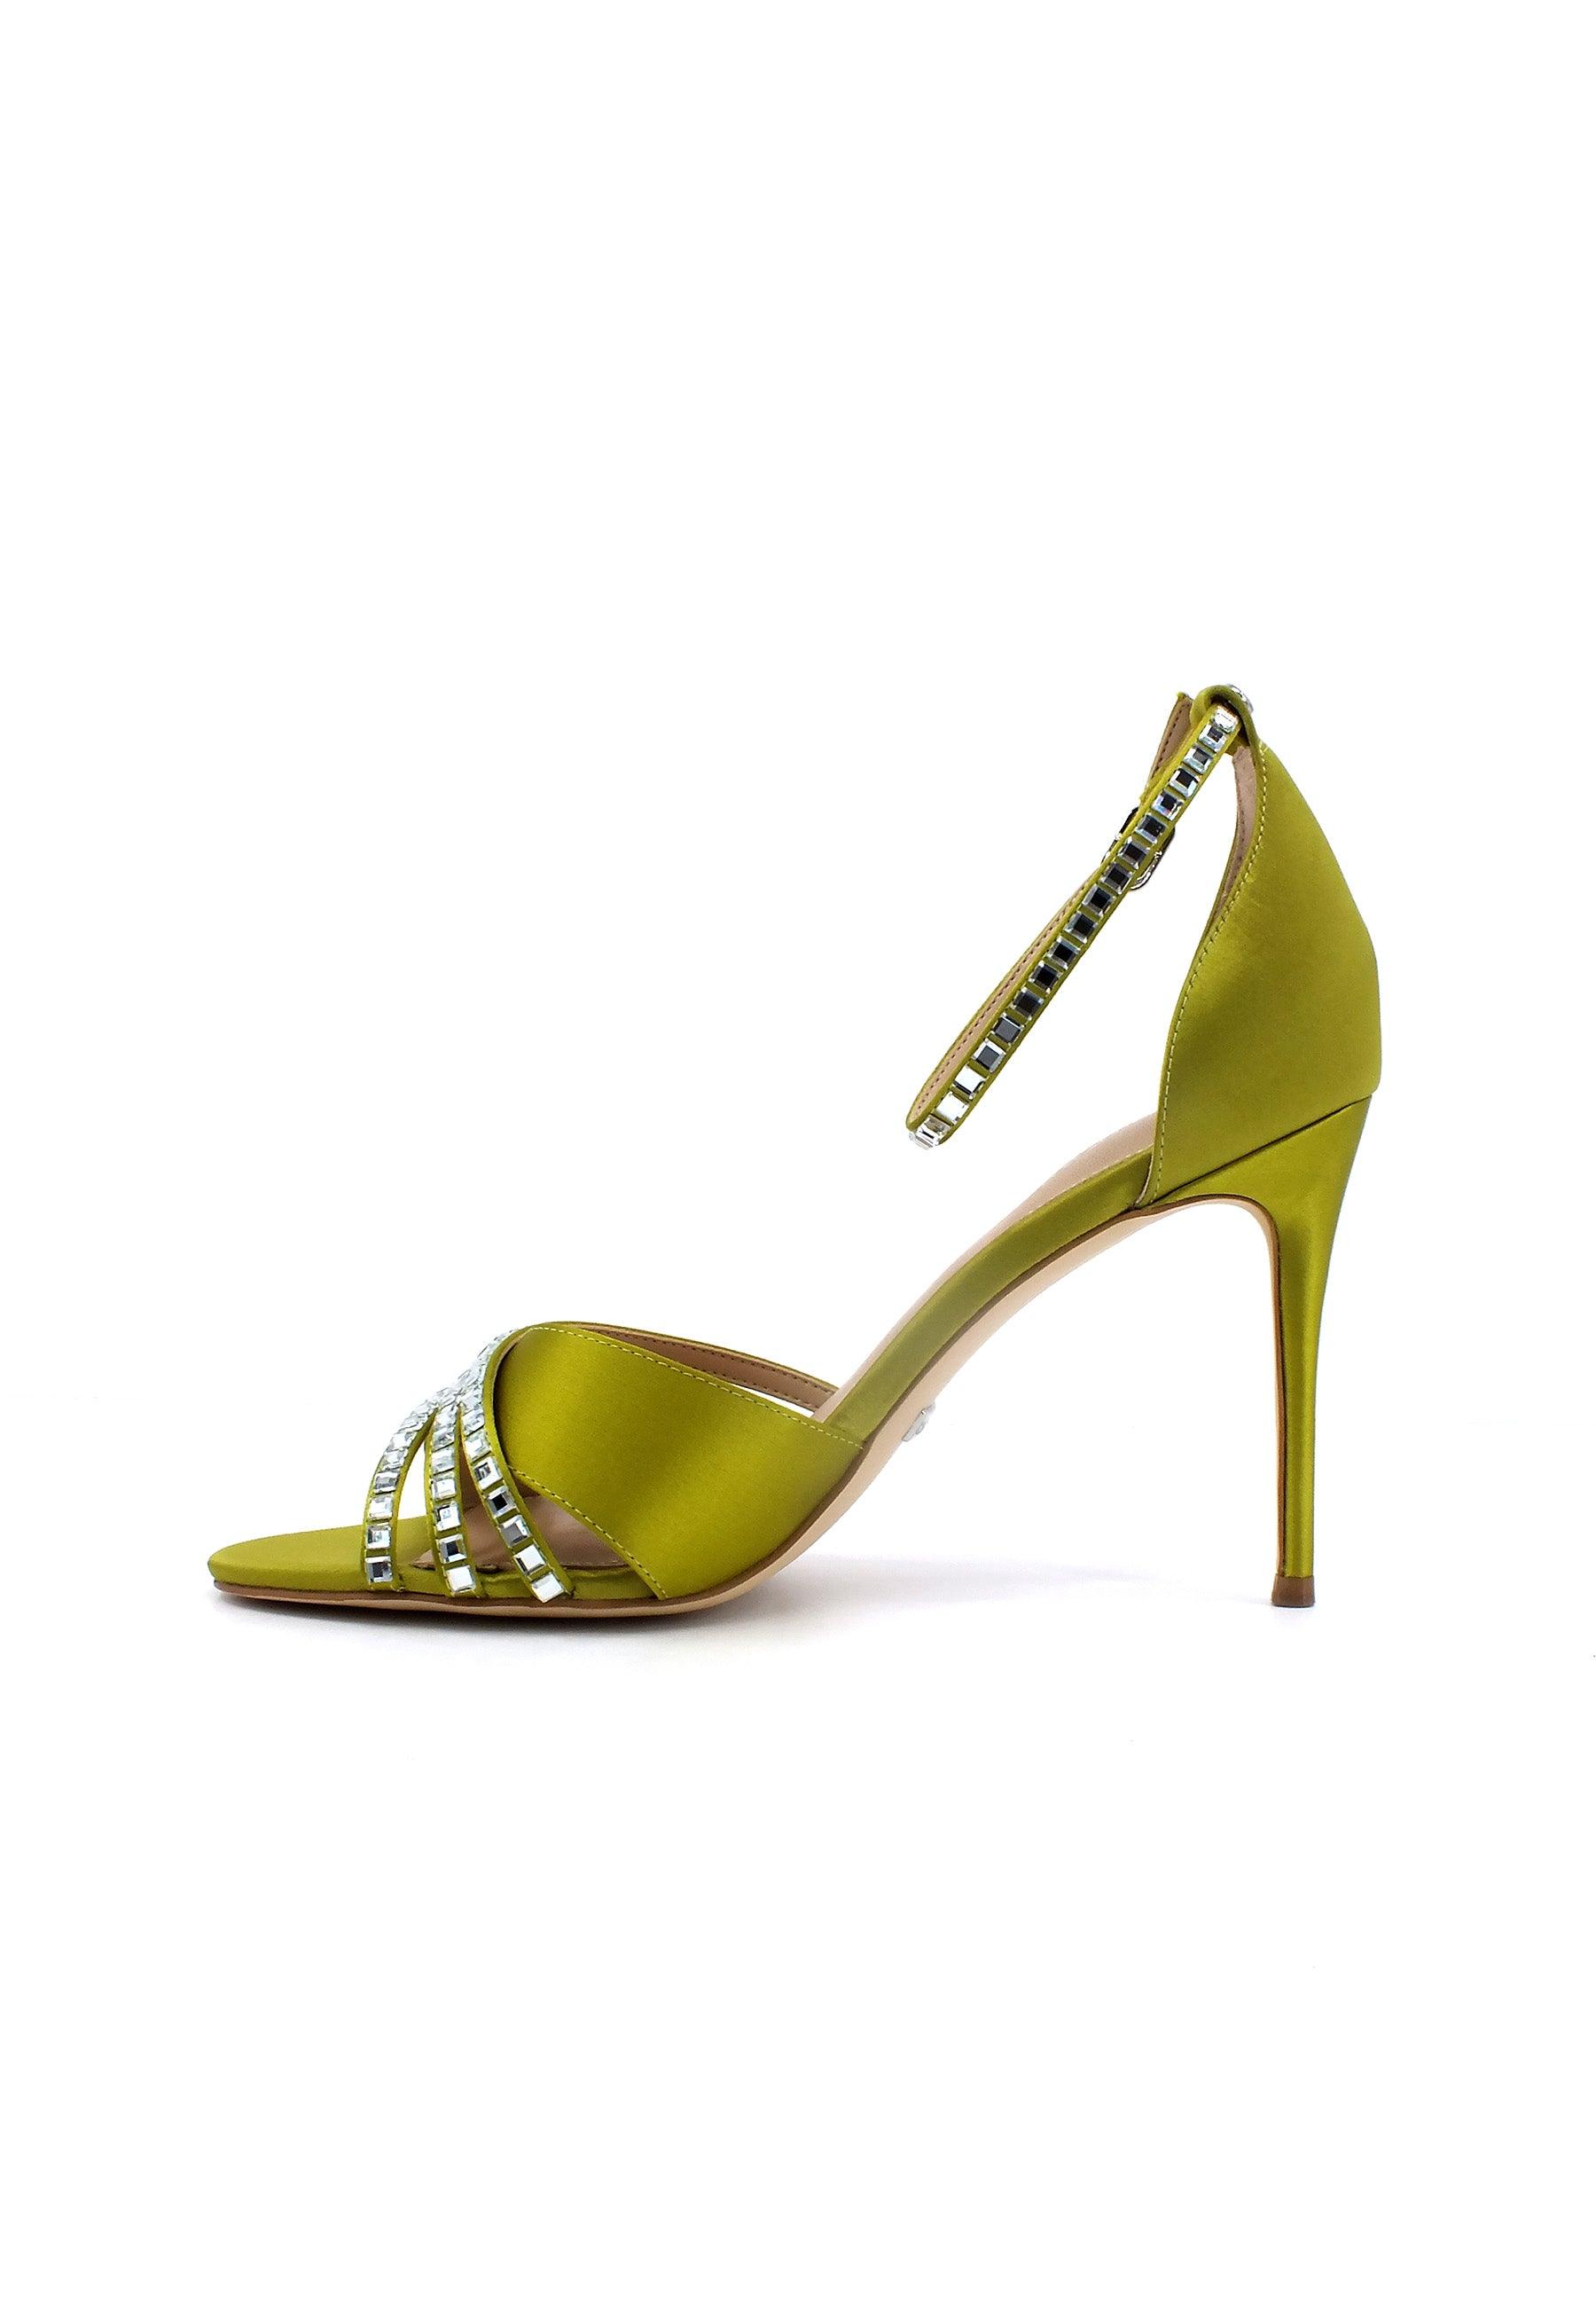 GUESS Sandalo Tacco Spillo Donna Green FL6KADSAT07 - Sandrini Calzature e Abbigliamento